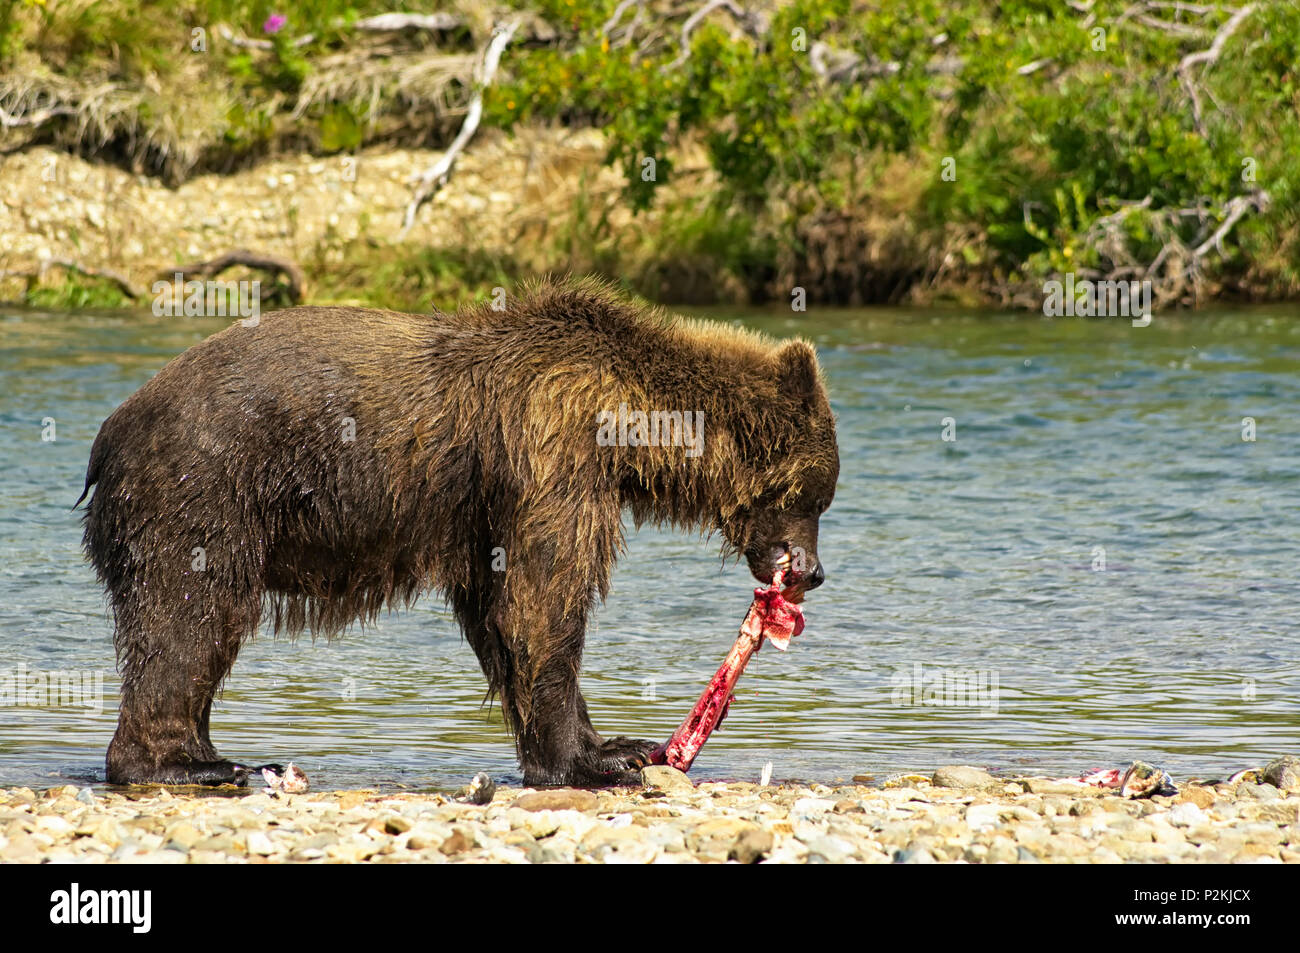 Un ours brun géant anéantira manger un saumon dans une rivière de la péninsule de l'Alaska Katmai,. Ours sur le bord d'une rivière, des saumons de l'alimentation Banque D'Images